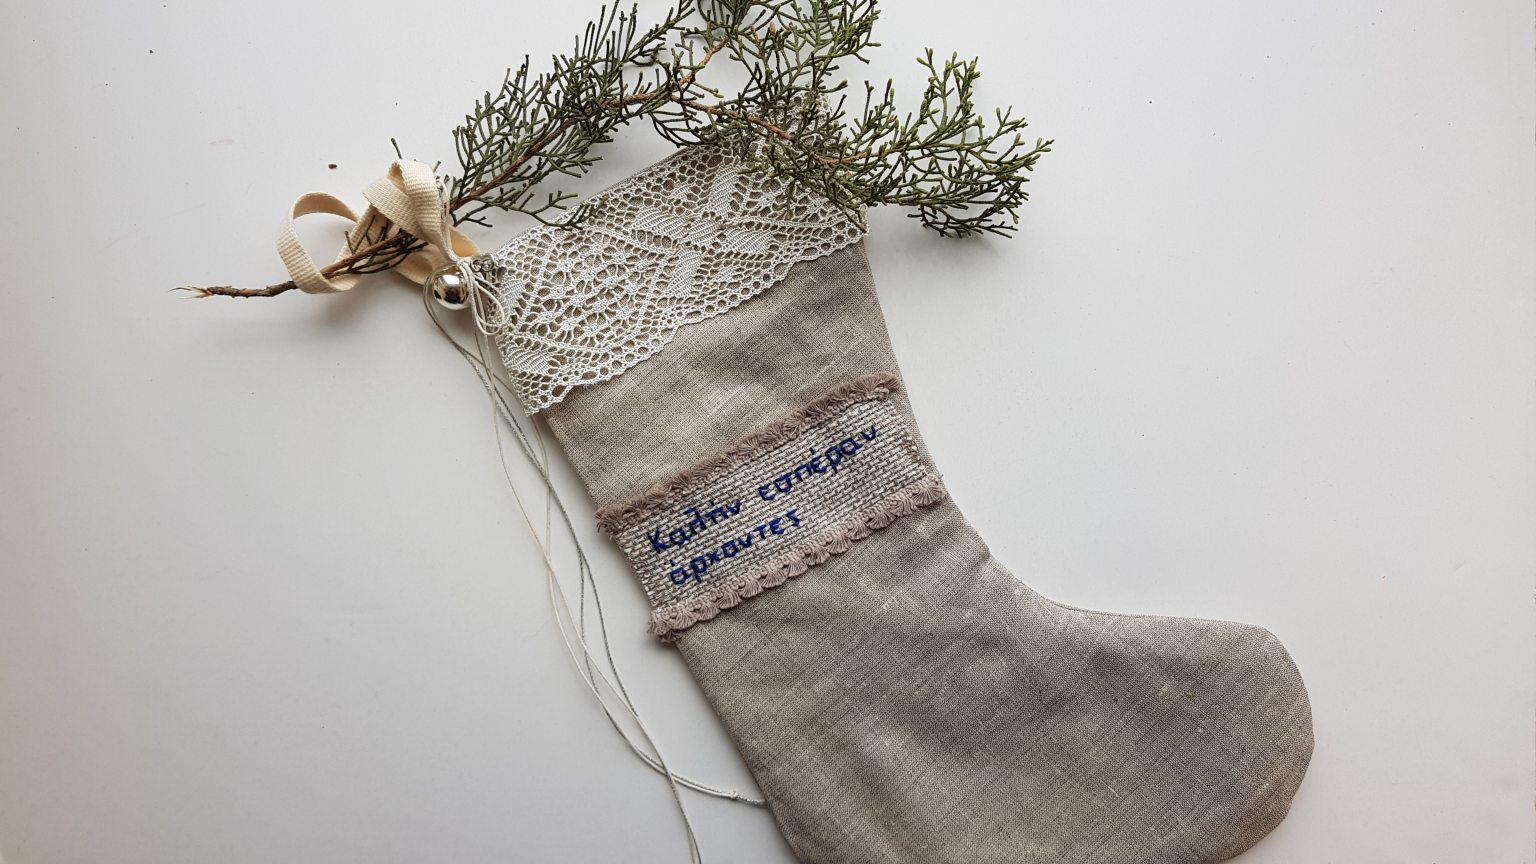 Χριστουγεννιάτικη κάλτσα "Καλήν εσπέραν άρχοντες"